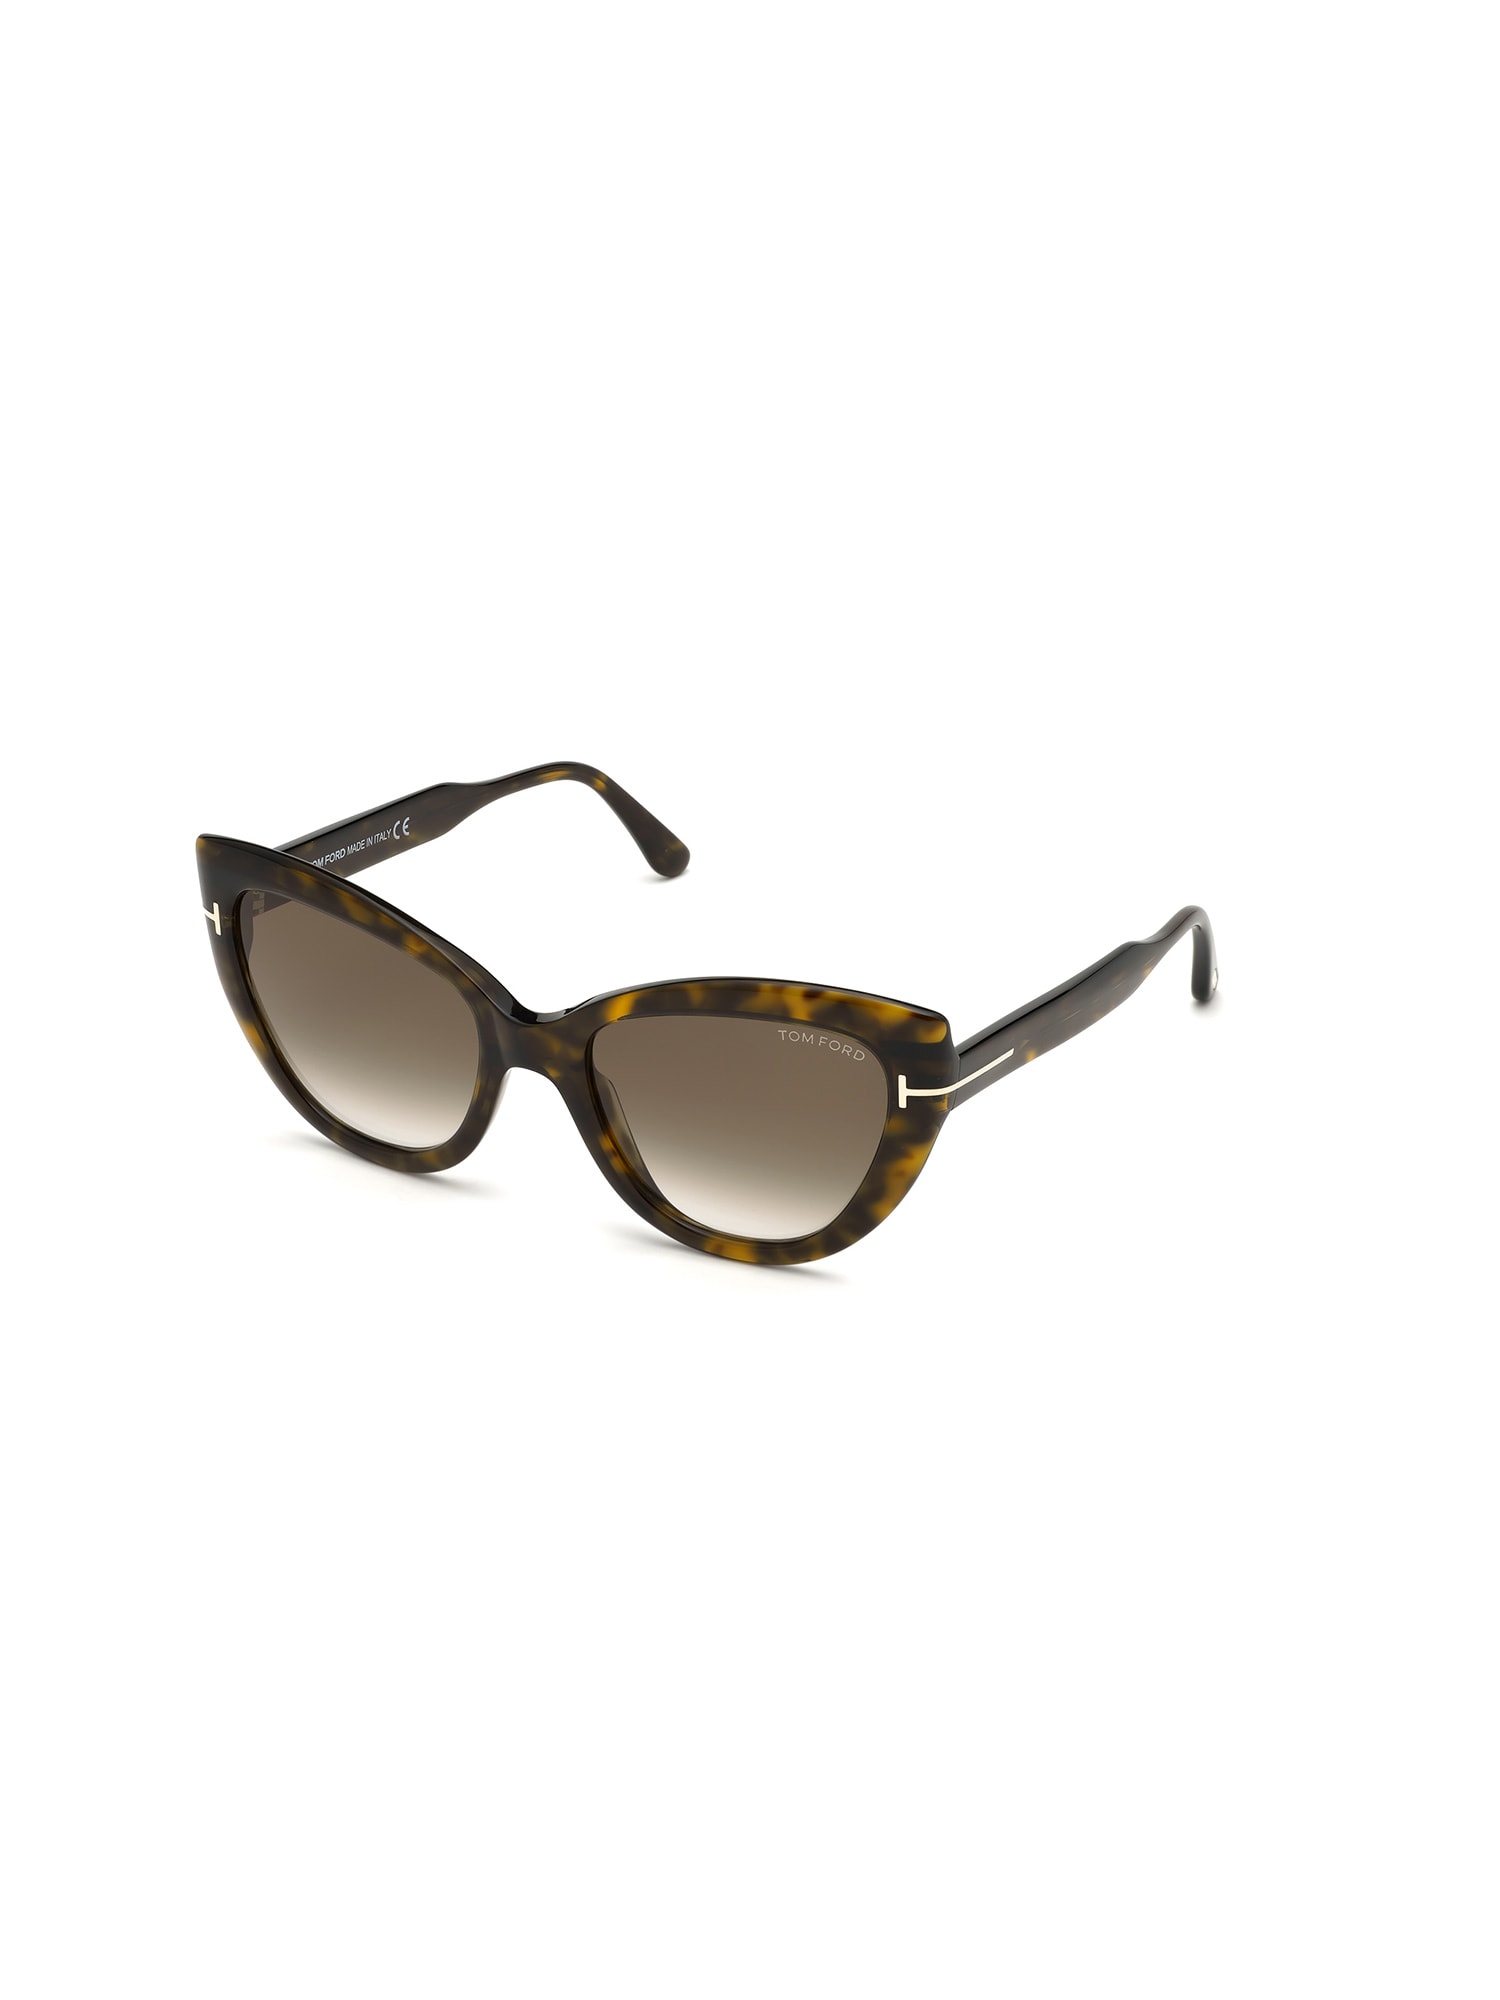 Tom Ford Ft0762 Sunglasses In K